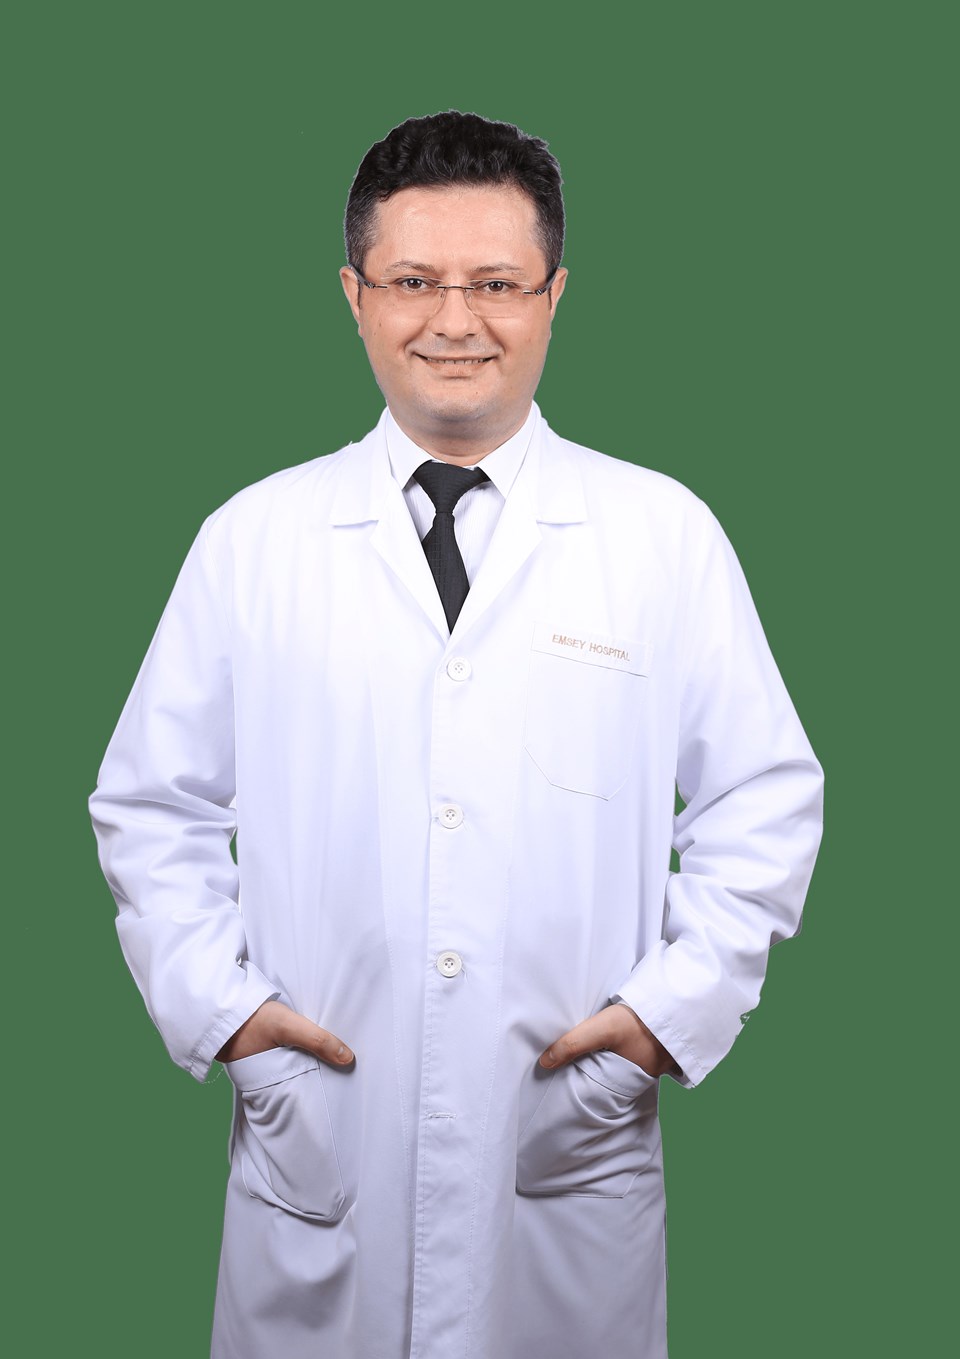 Psikiyatri Uzmanı Dr. Orhan Karaca

